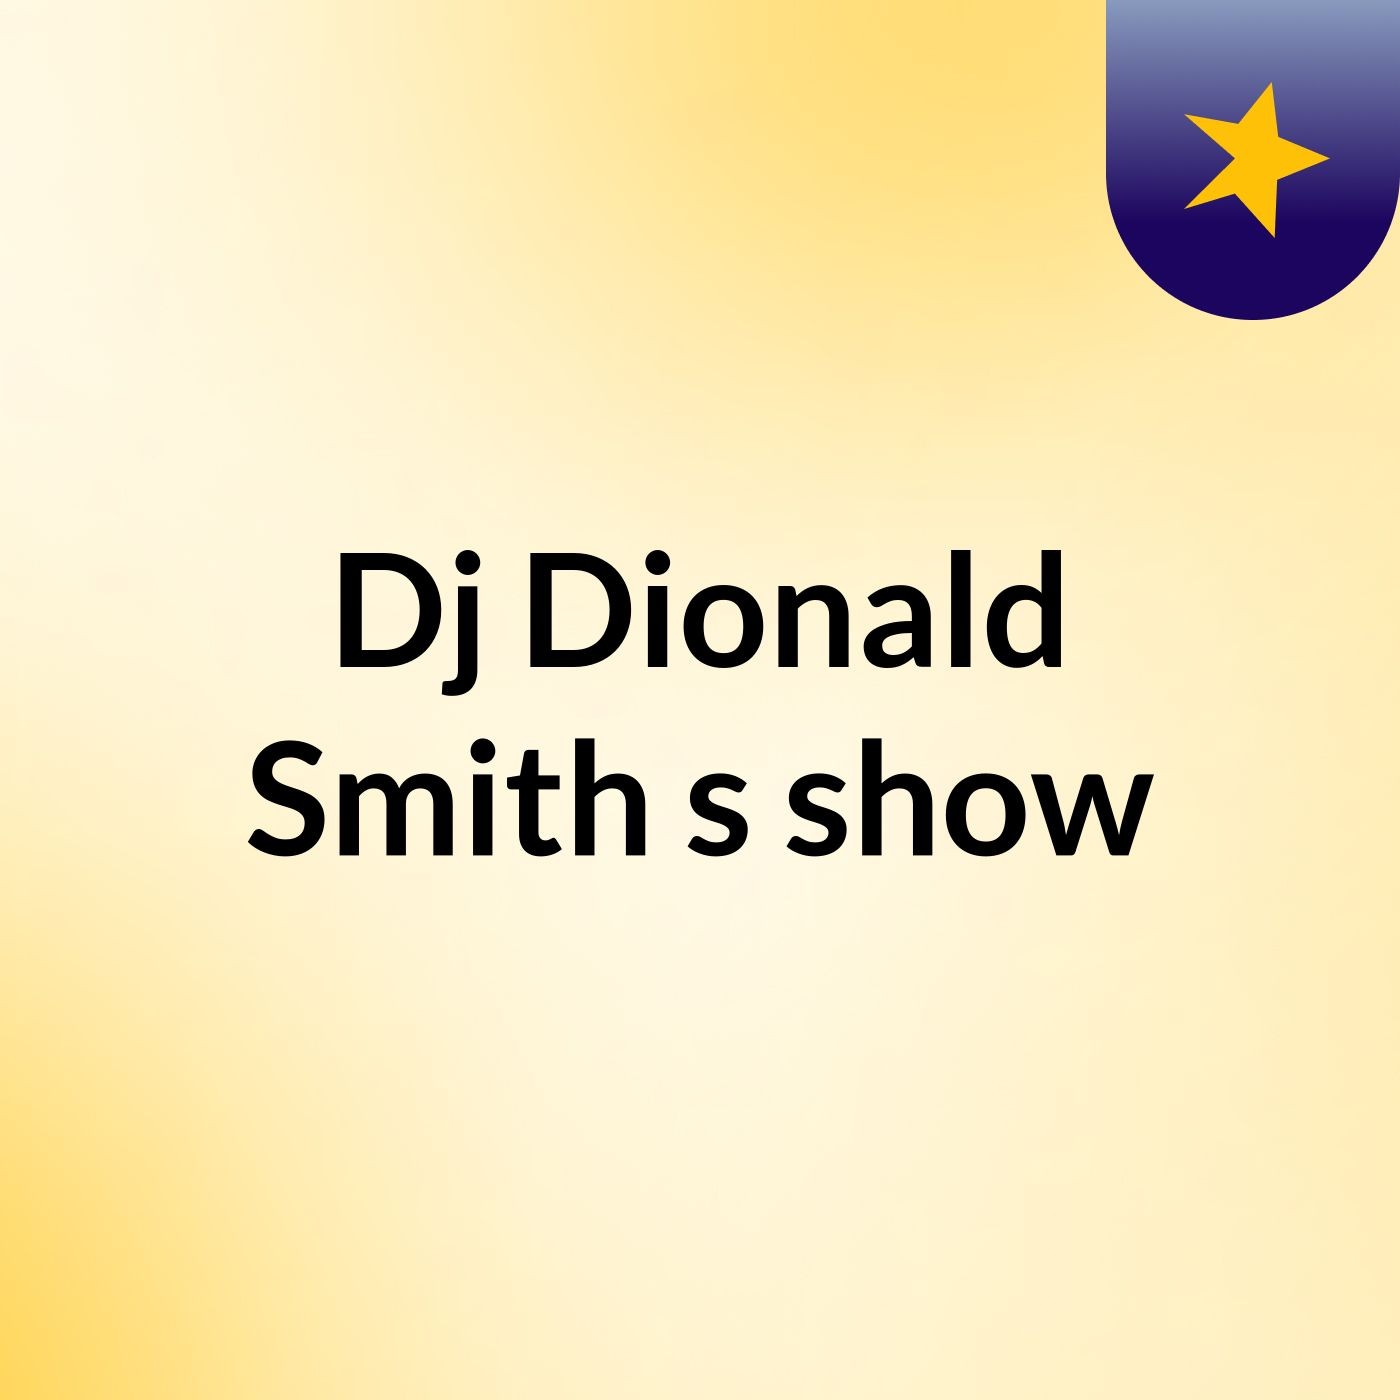 Episódio 2 - Dj'Dionald Smith's show